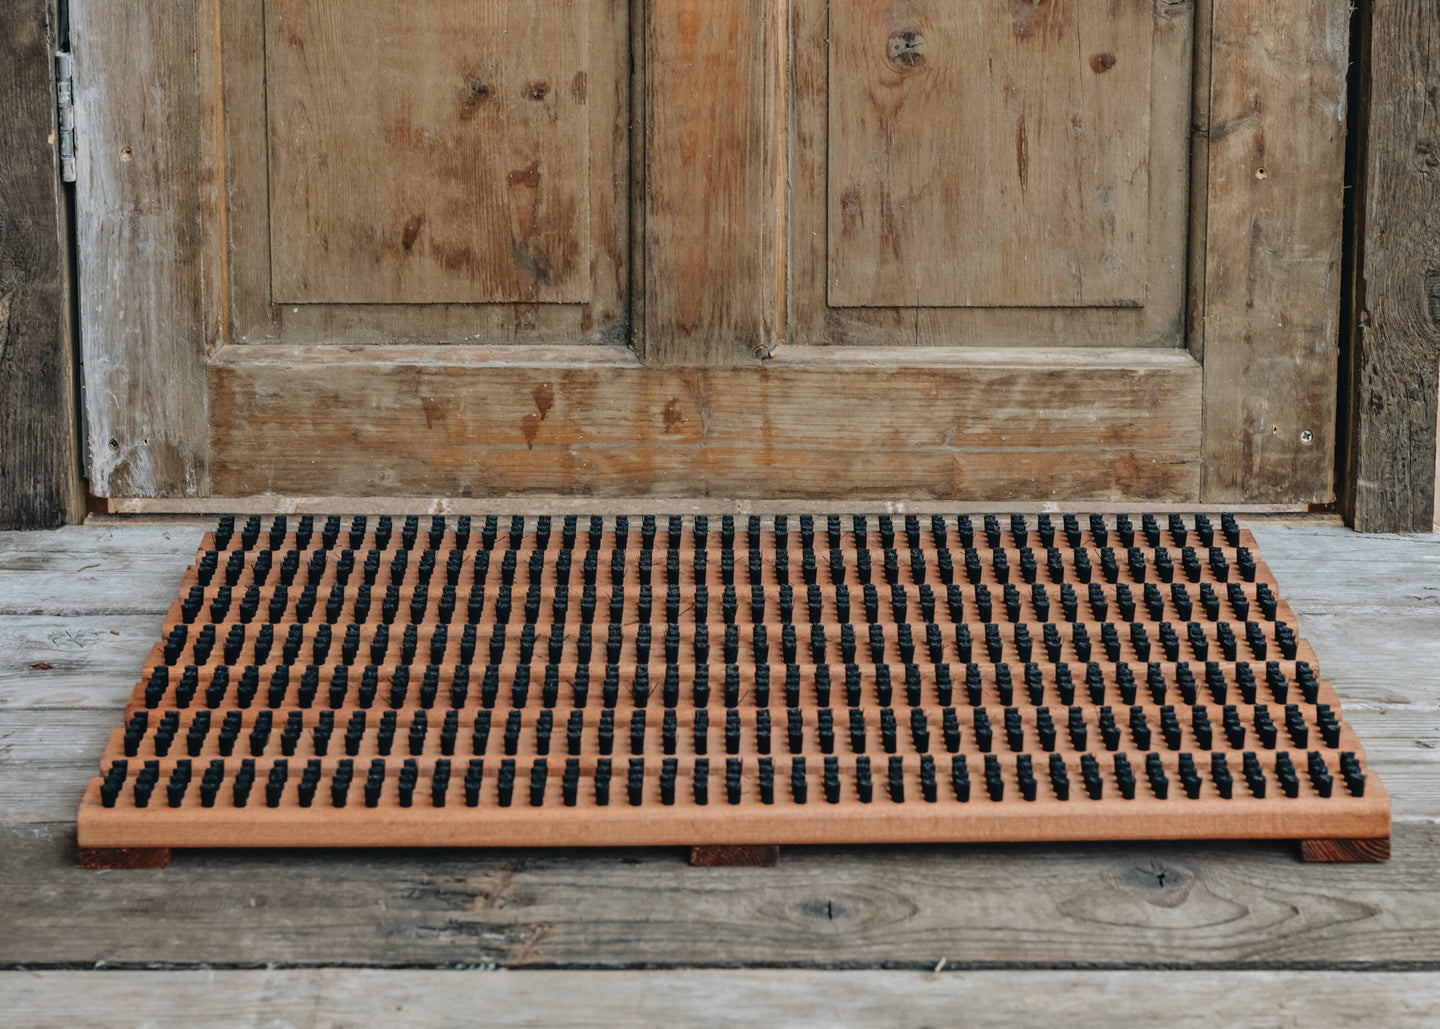 Iris Hantverk Wooden Outdoor Doormat with Nylon Bristles, 60x40cm, Natural by Iris Hantverk